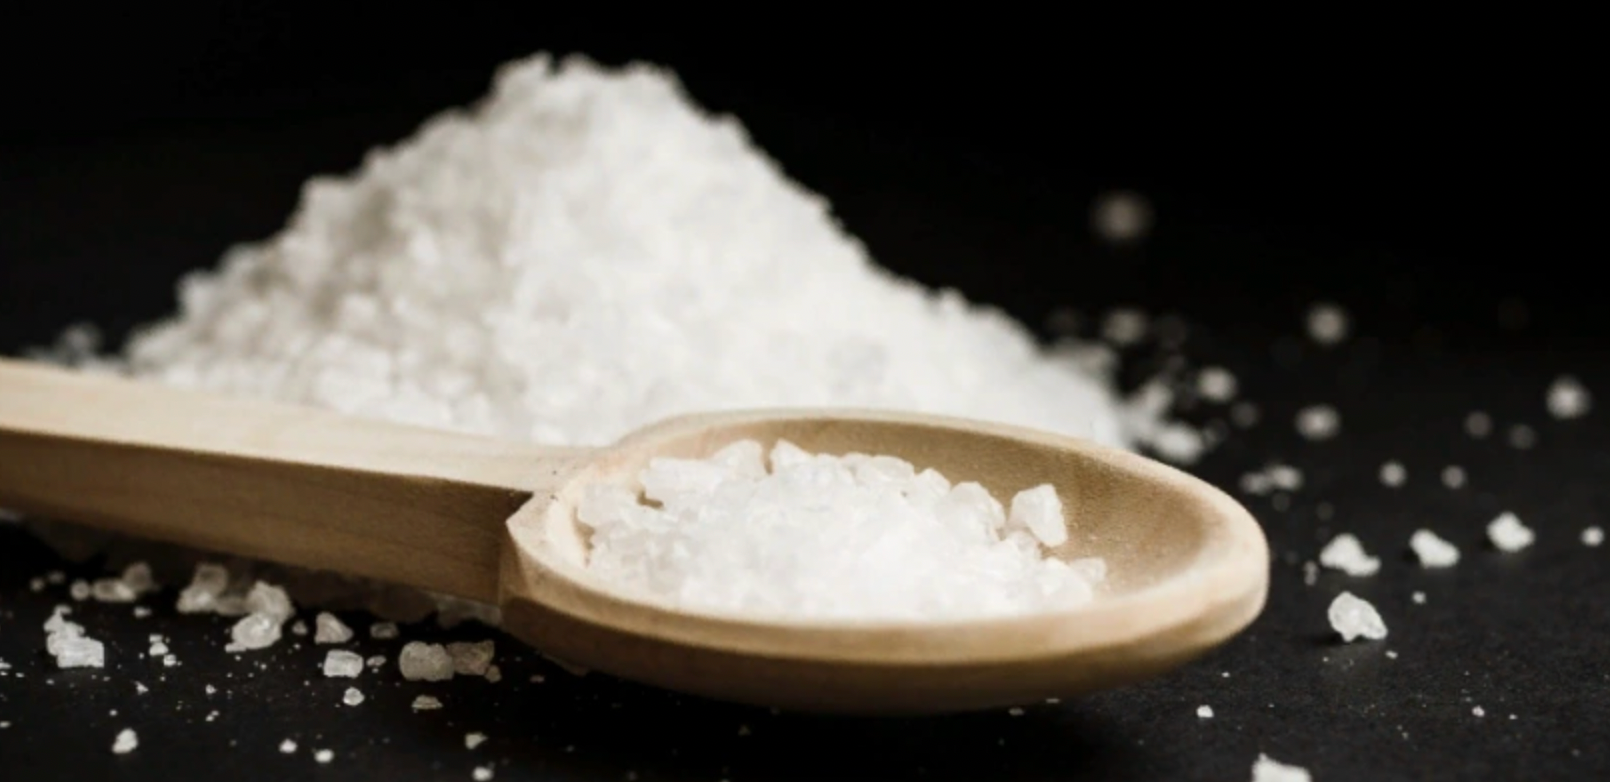 Посыпьте соль у порога и спите спокойно: древняя хитрость актуальна и сегодня